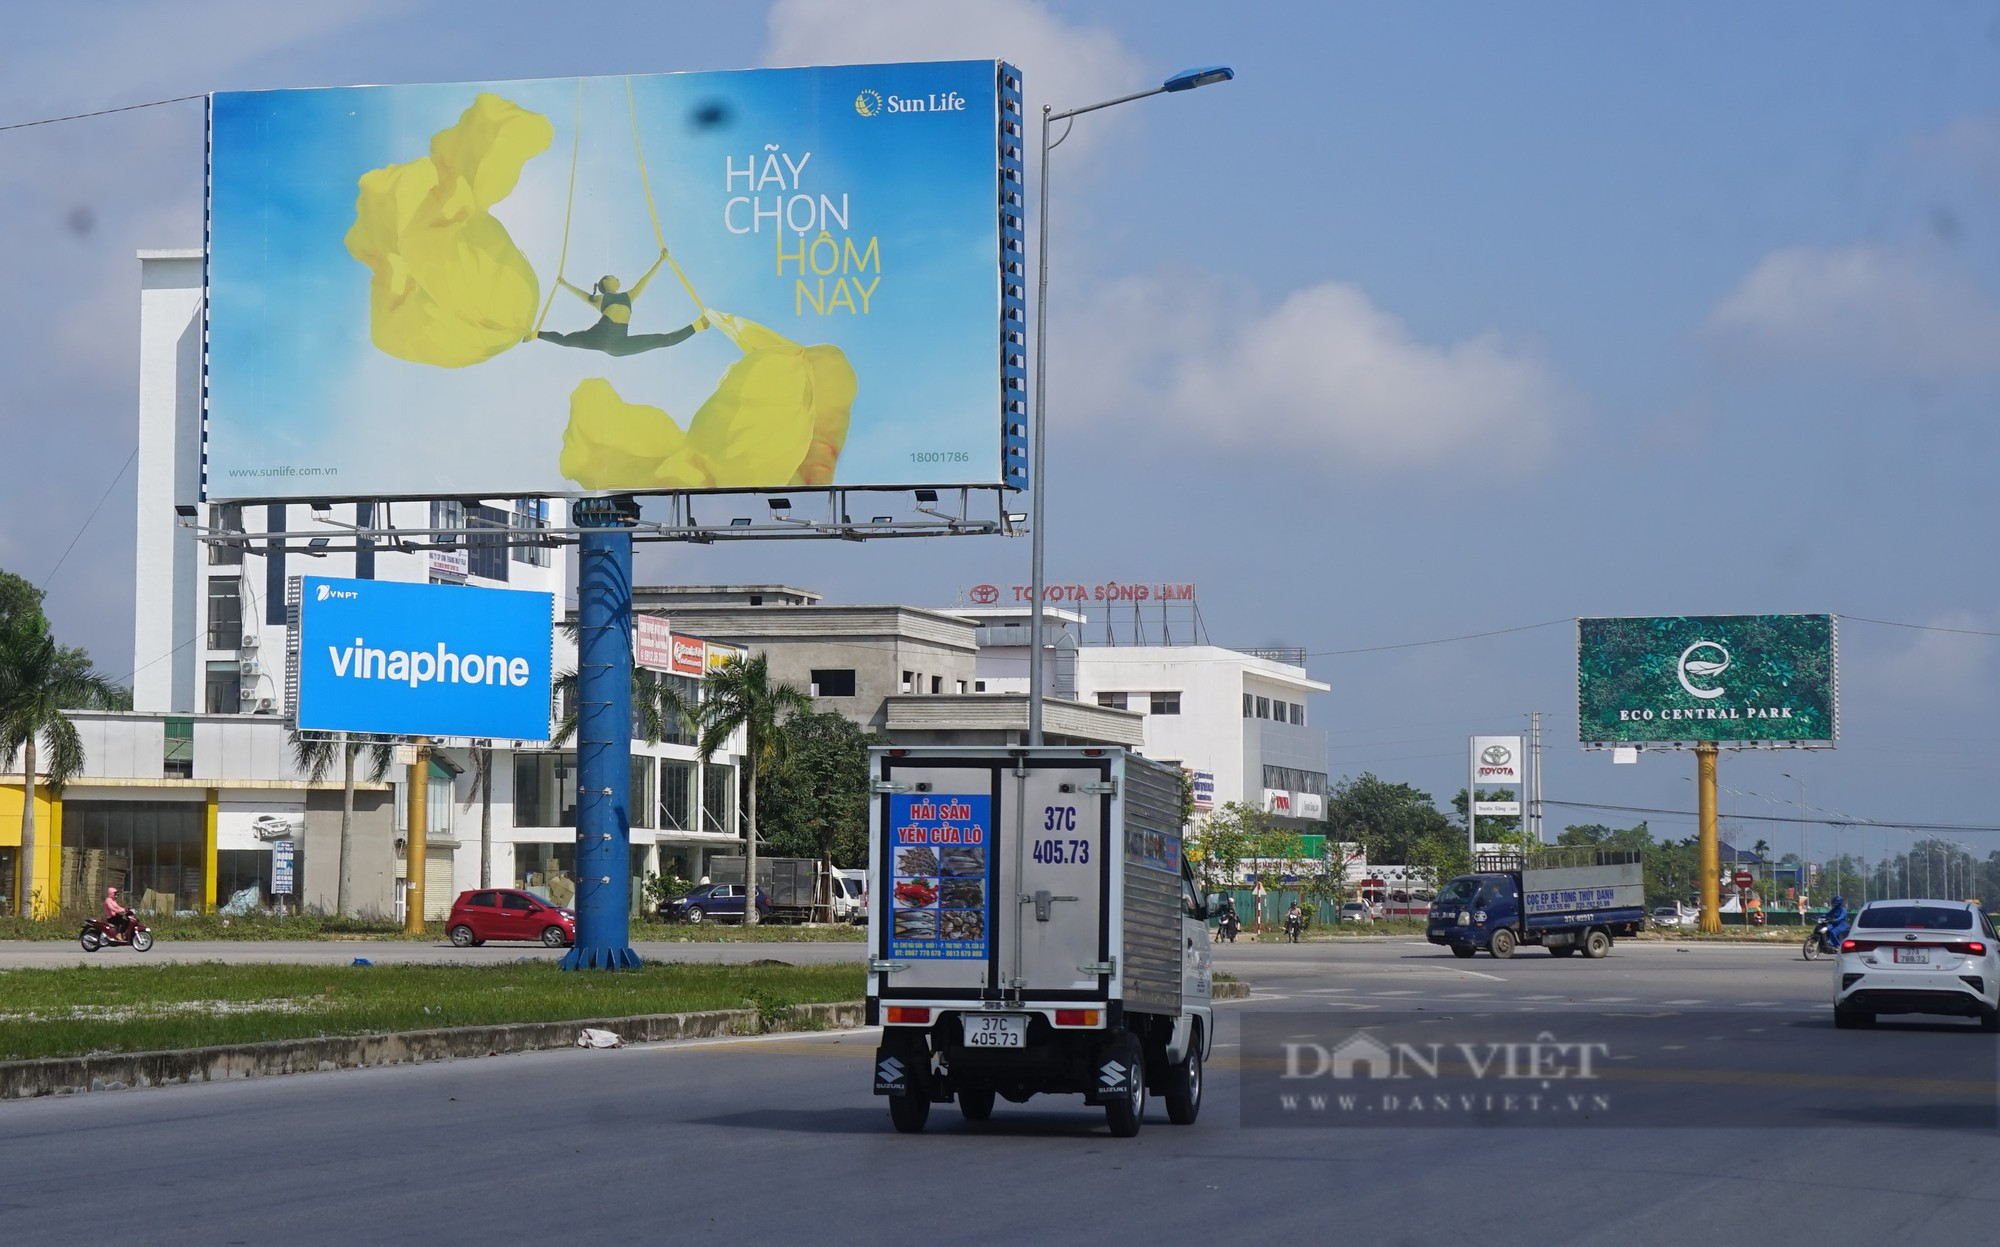 Bát nháo biển quảng cáo khủng ở thành phố Vinh, Nghệ An - Ảnh 17.